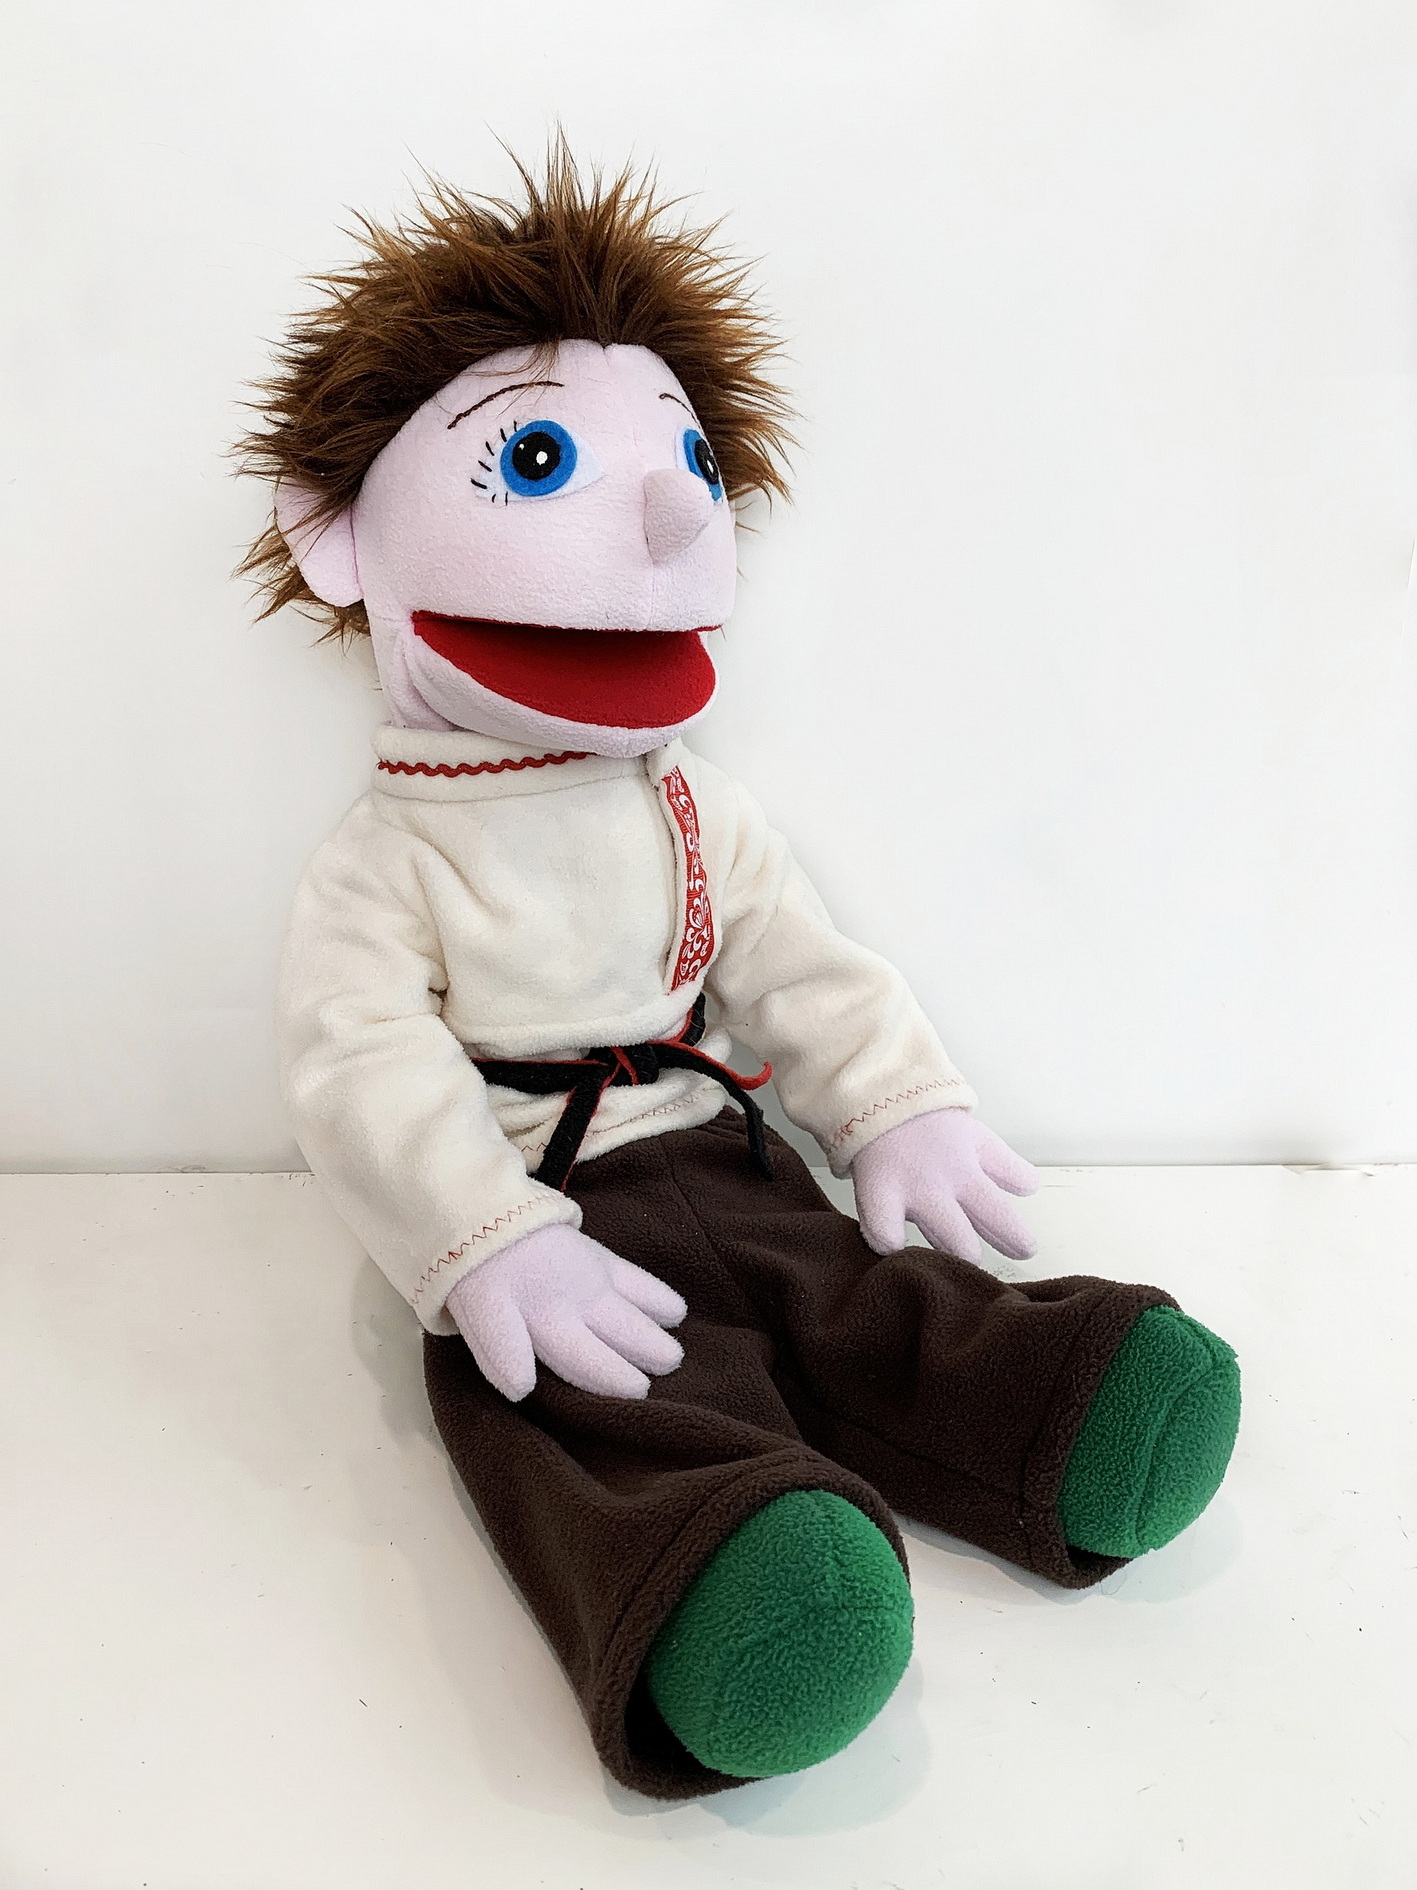 Мальчик Иванушка - кукла-маппет с открывающимся ртом, 55 см.